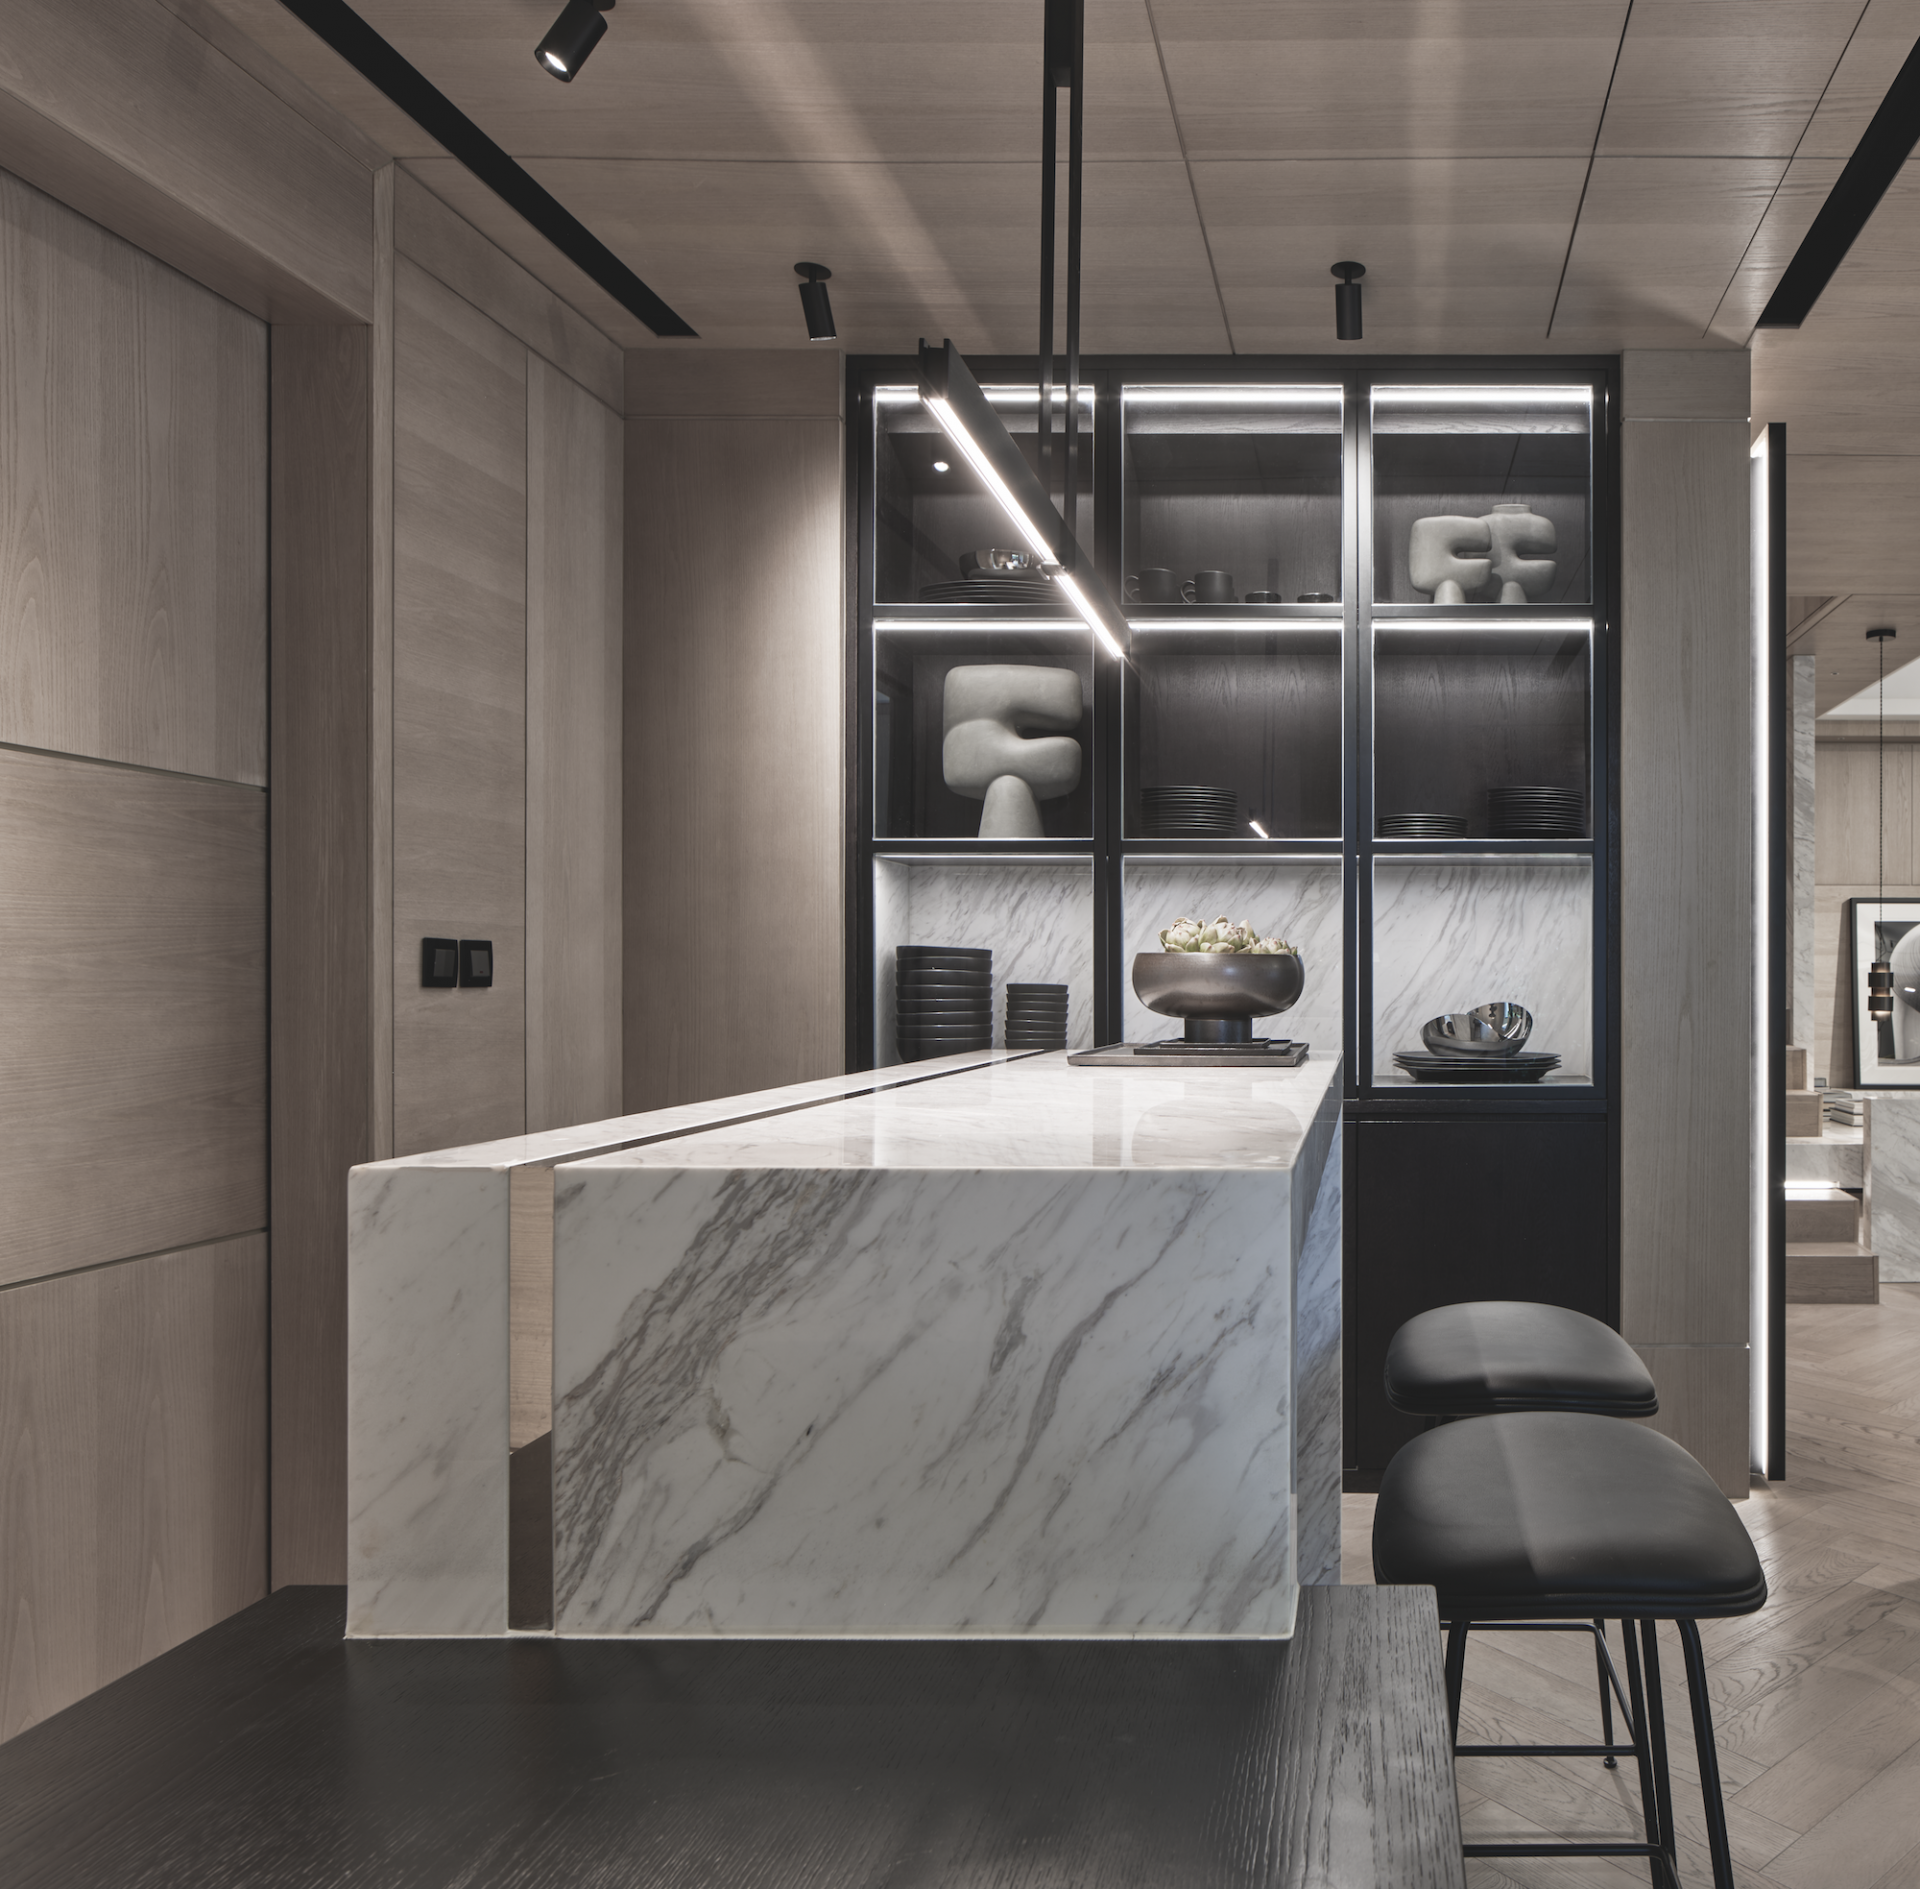 British Interior Design Maven Brings Her Signature Style to This New Kai Tak Apartment 